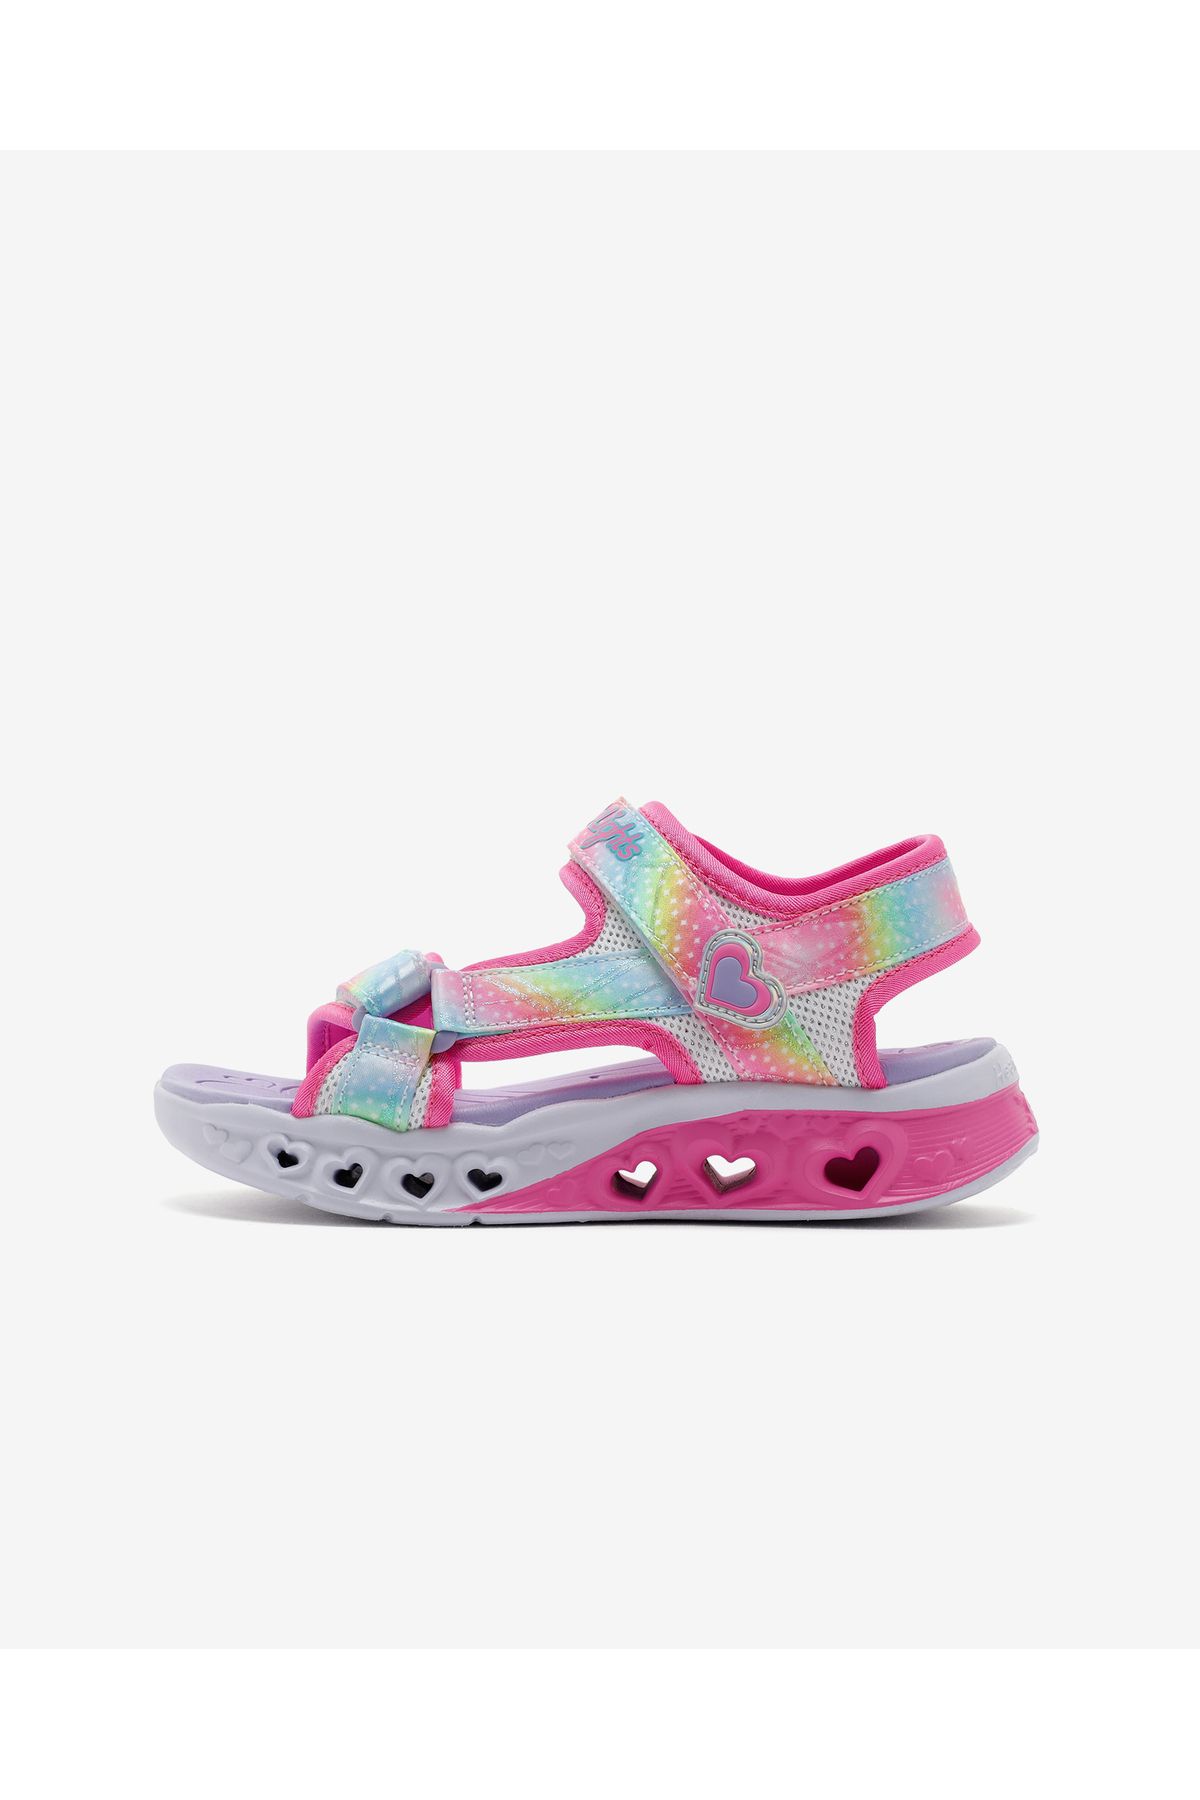 Skechers Flutter Hearts Sandal - Twilight Dash Büyük Kız Çocuk Beyaz Sandalet 303105l Wmlt